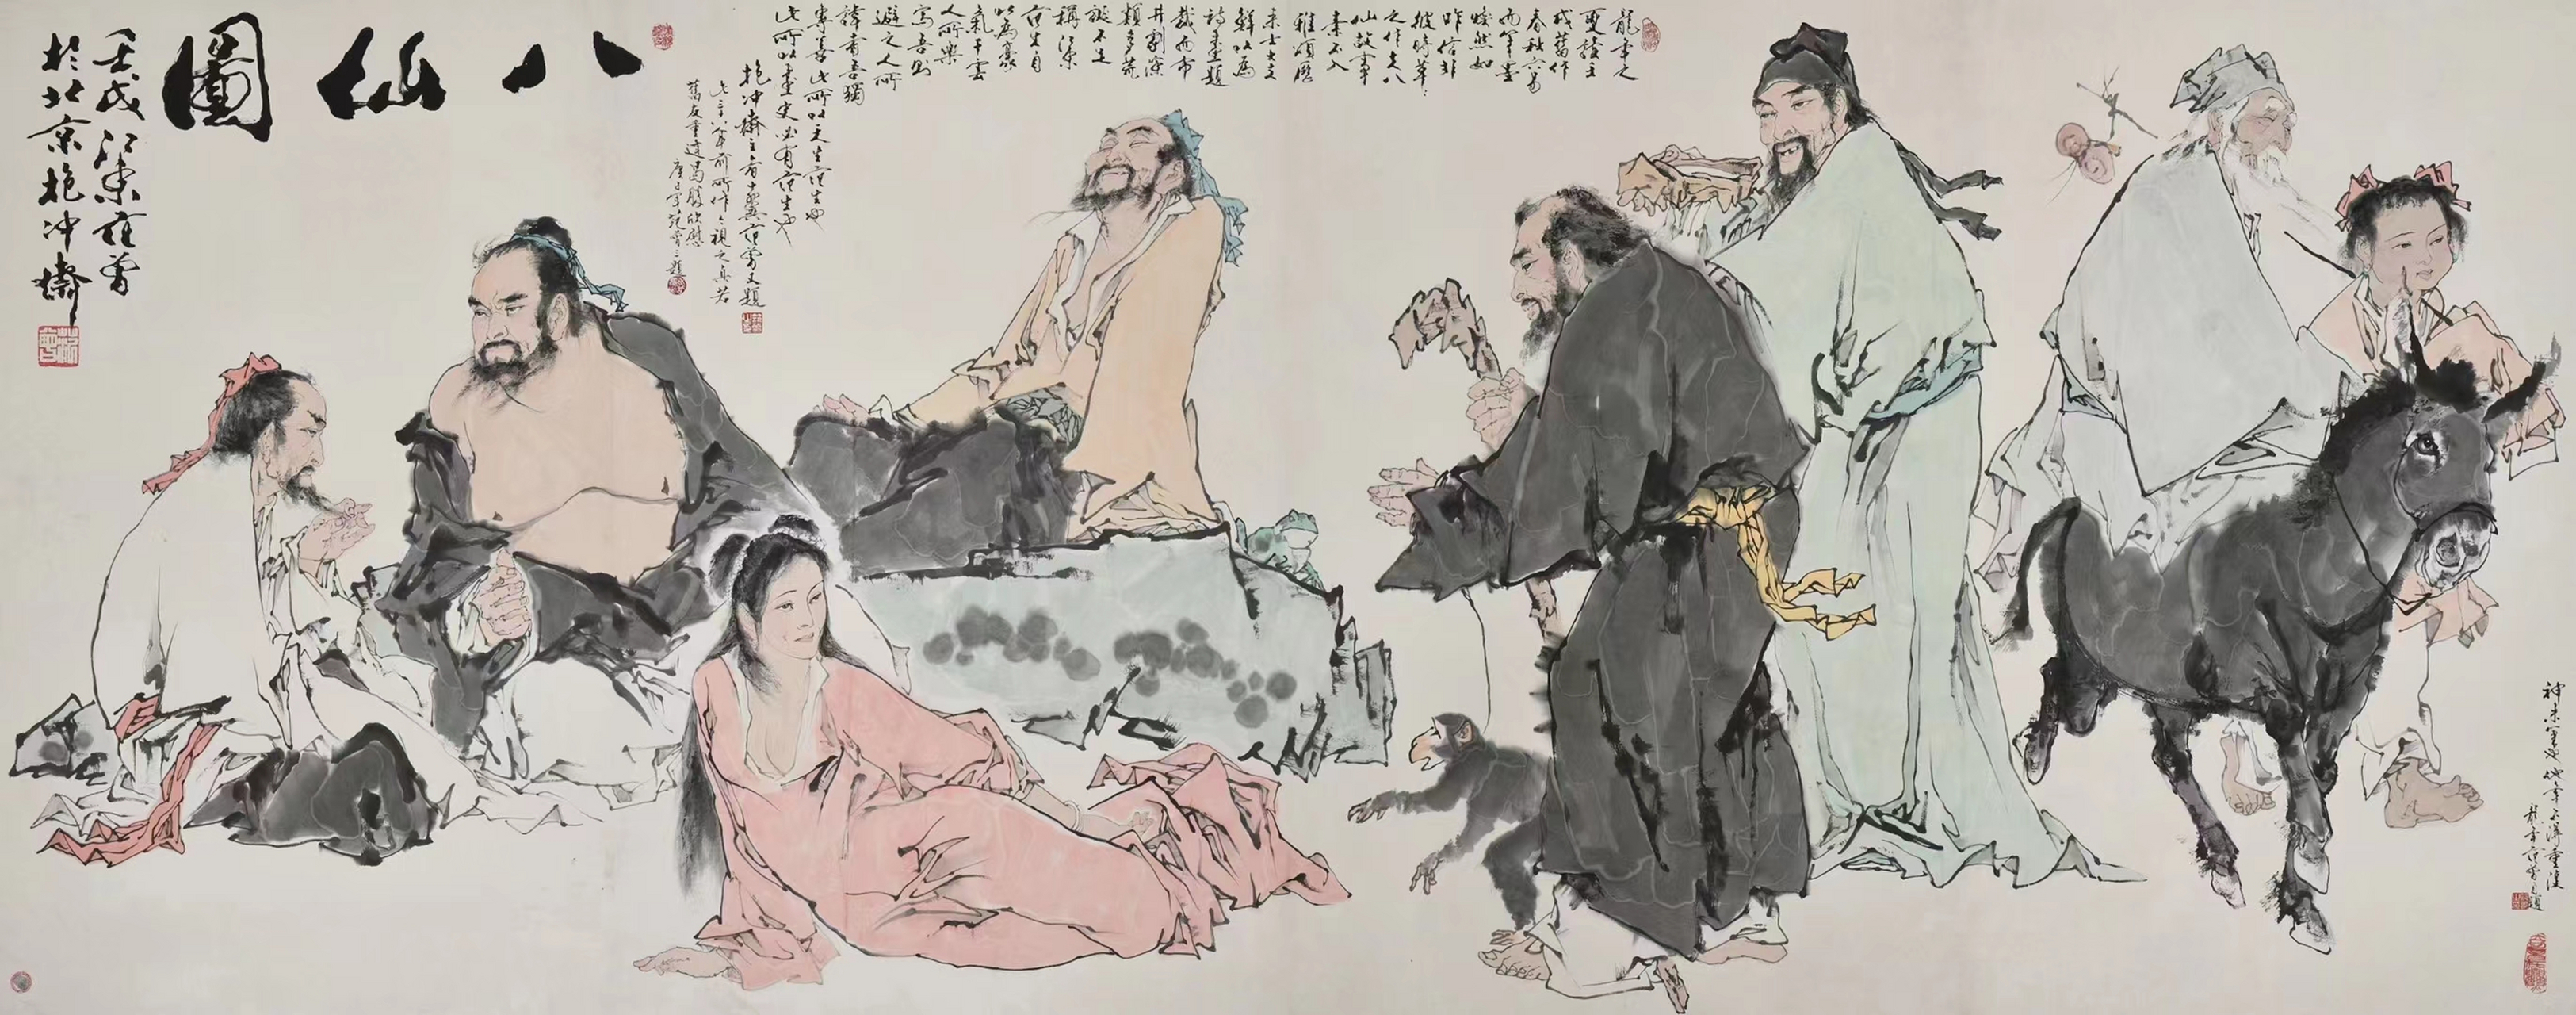 范曾先生丈二极品《八仙图》,尺寸368 143,三次题款,右下角:神来之笔